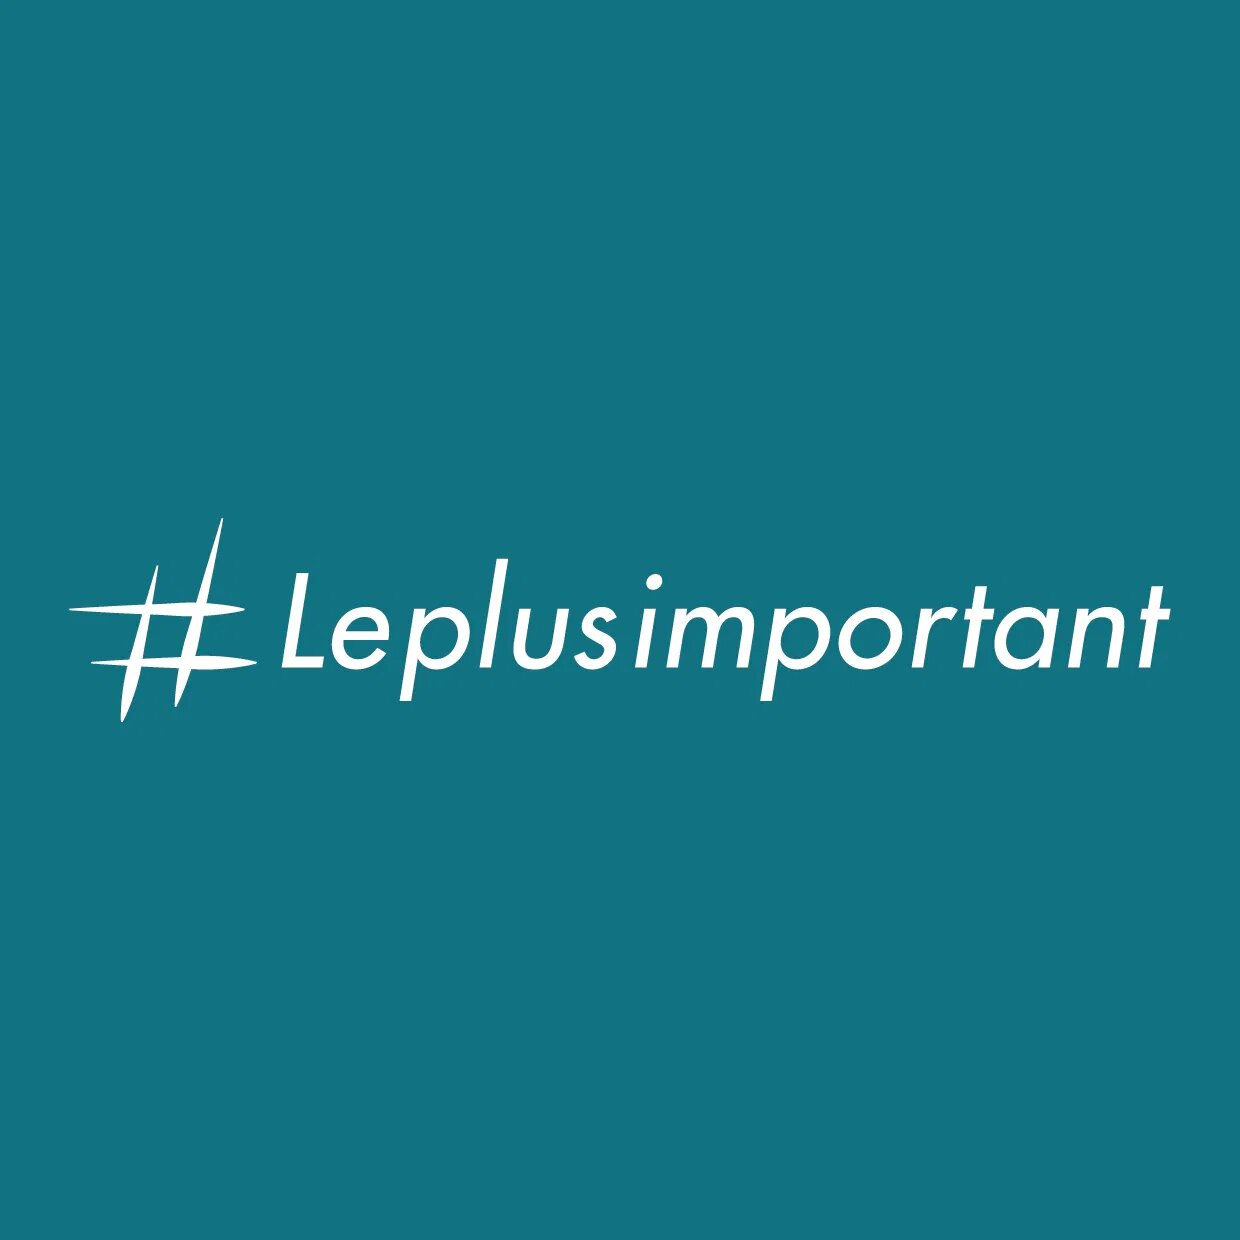 Logo #LePlusImportant